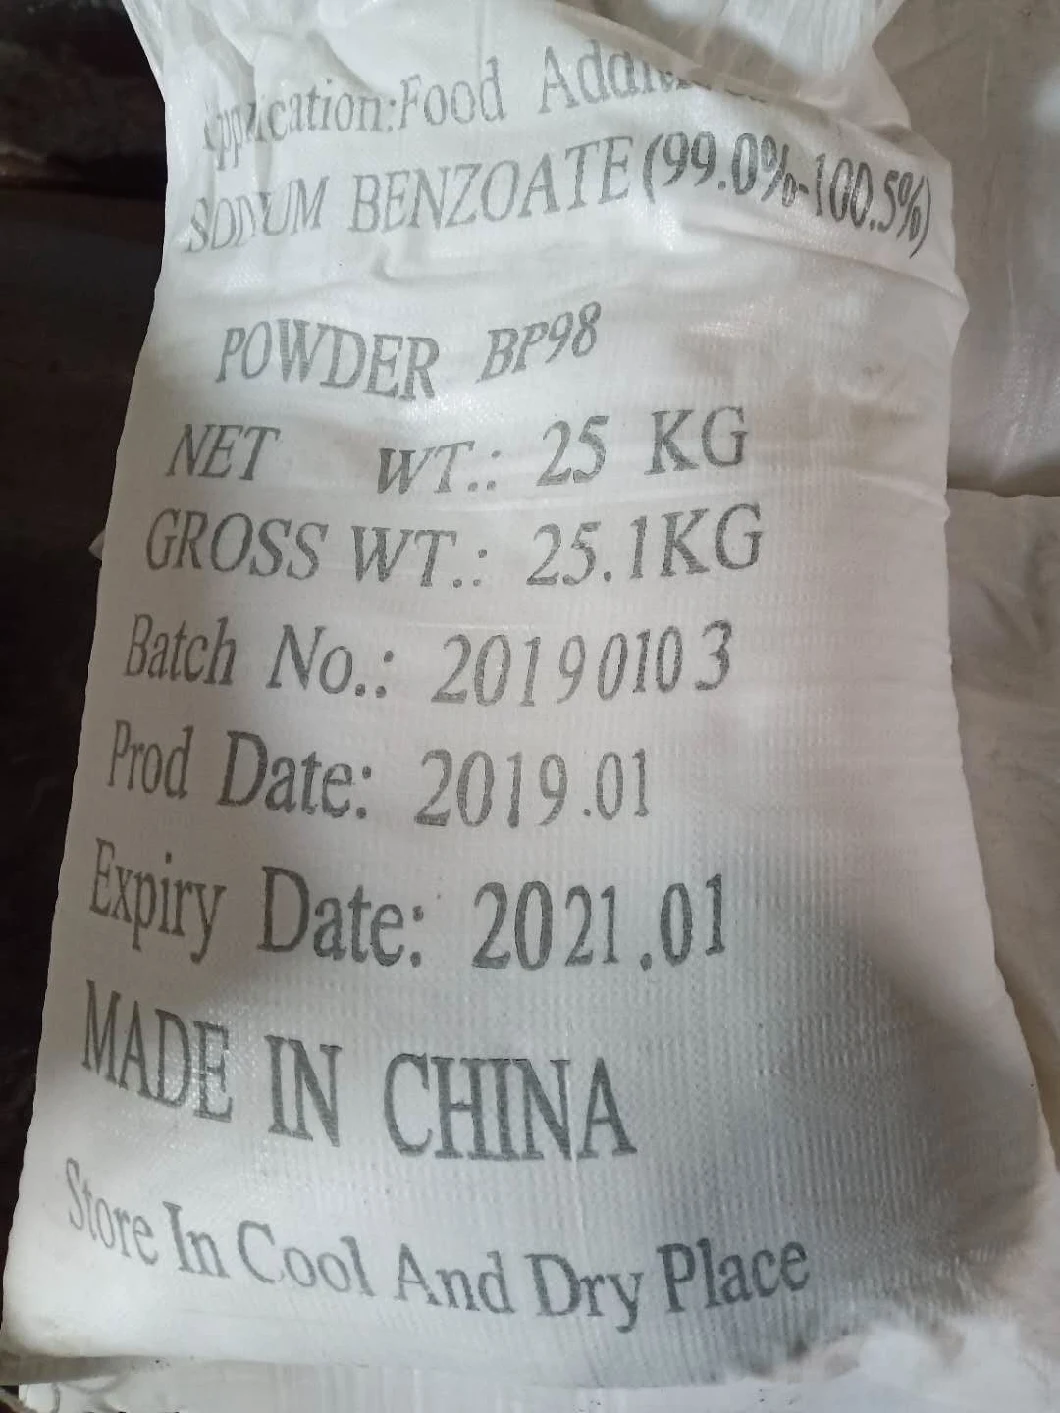 99% Powder E211 Benzoic Acid Sodium Salt China Sodium Benzoate Salt